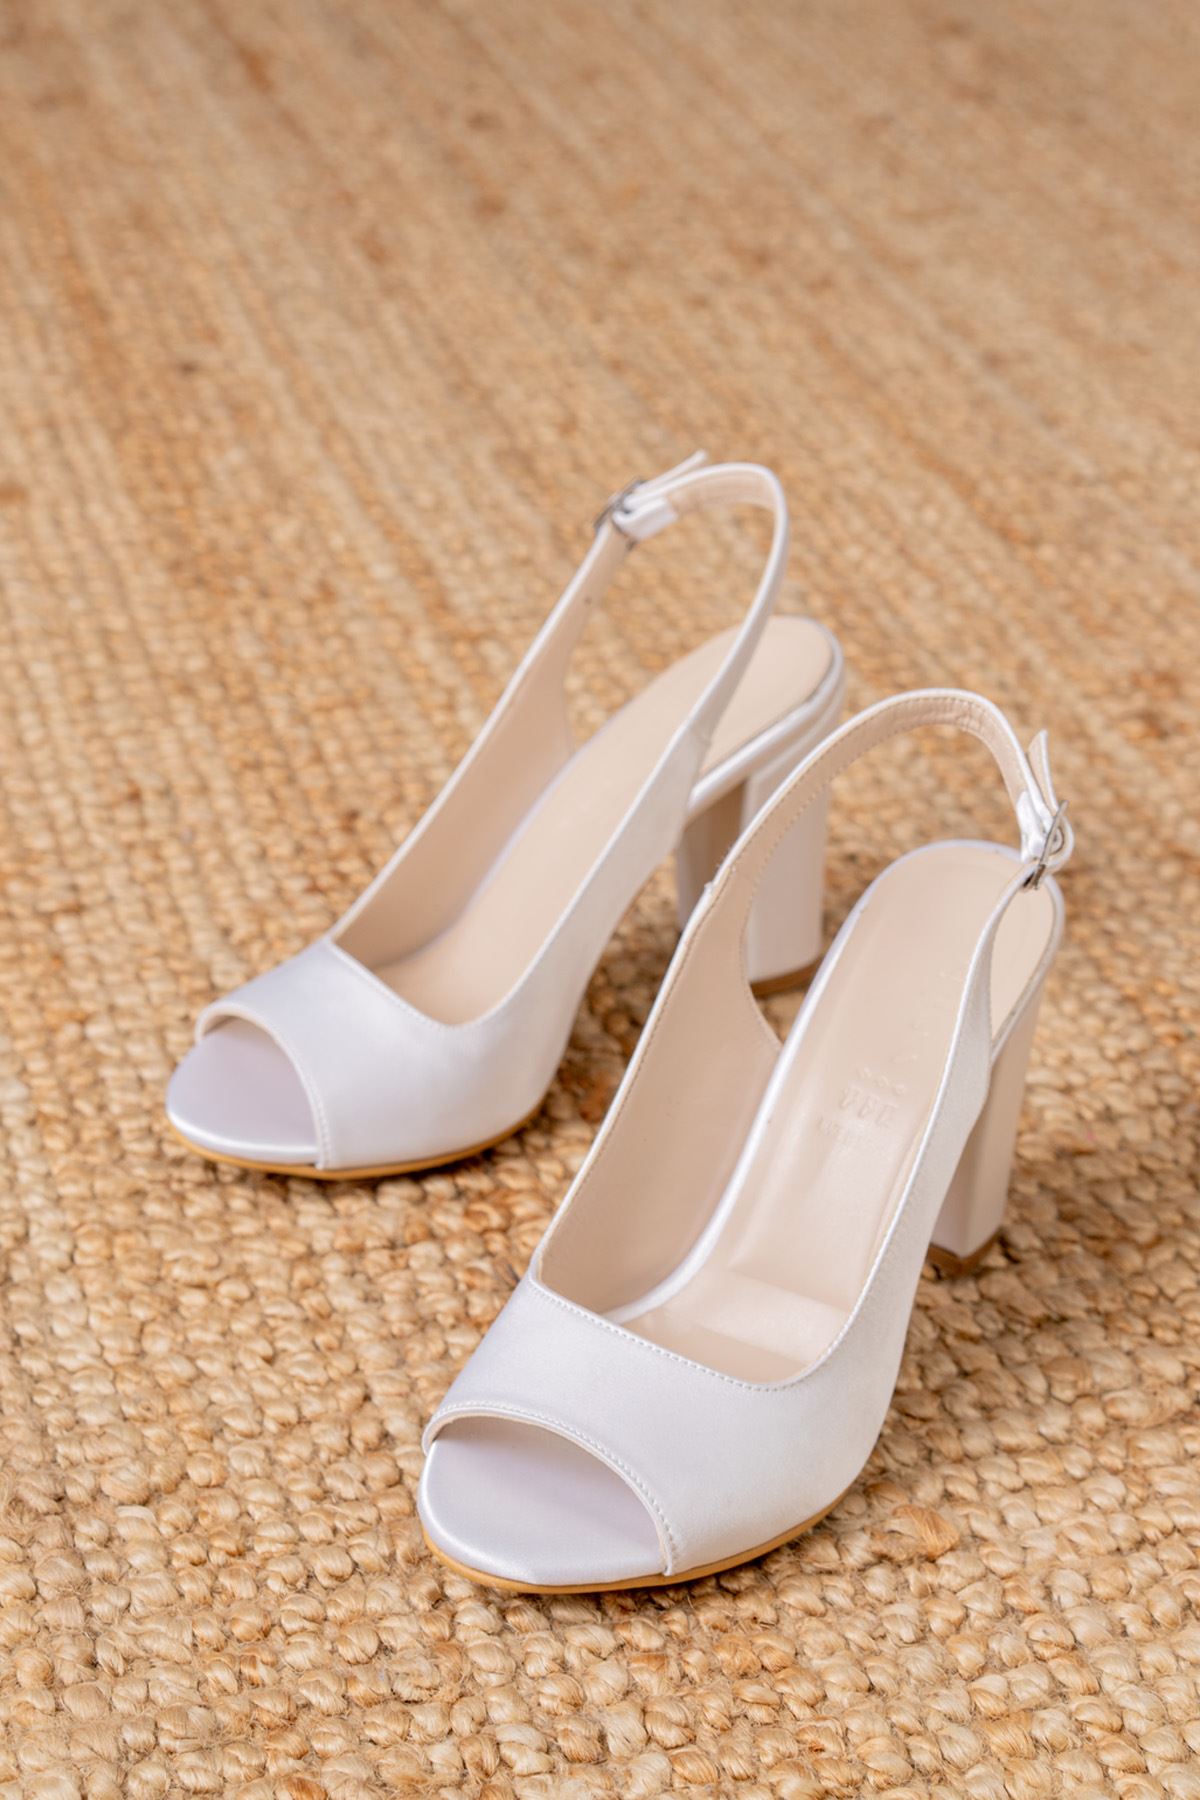 Meira Beyaz Saten Detaylı Yüksek Topuklu Kadın Ayakkabı   